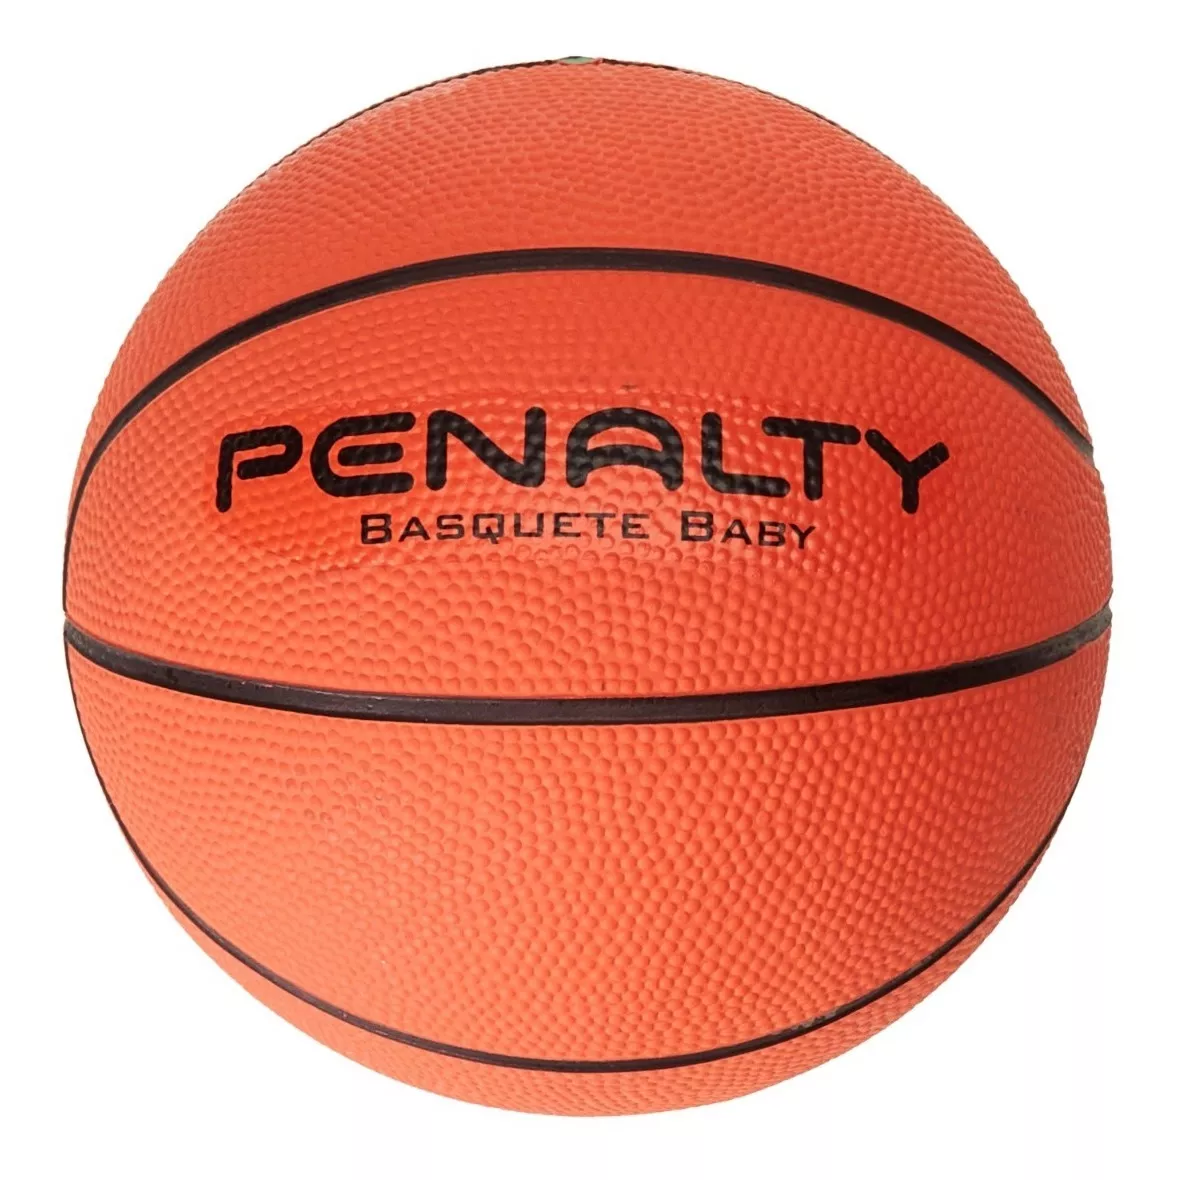 Primeira imagem para pesquisa de bola de basquete penalty